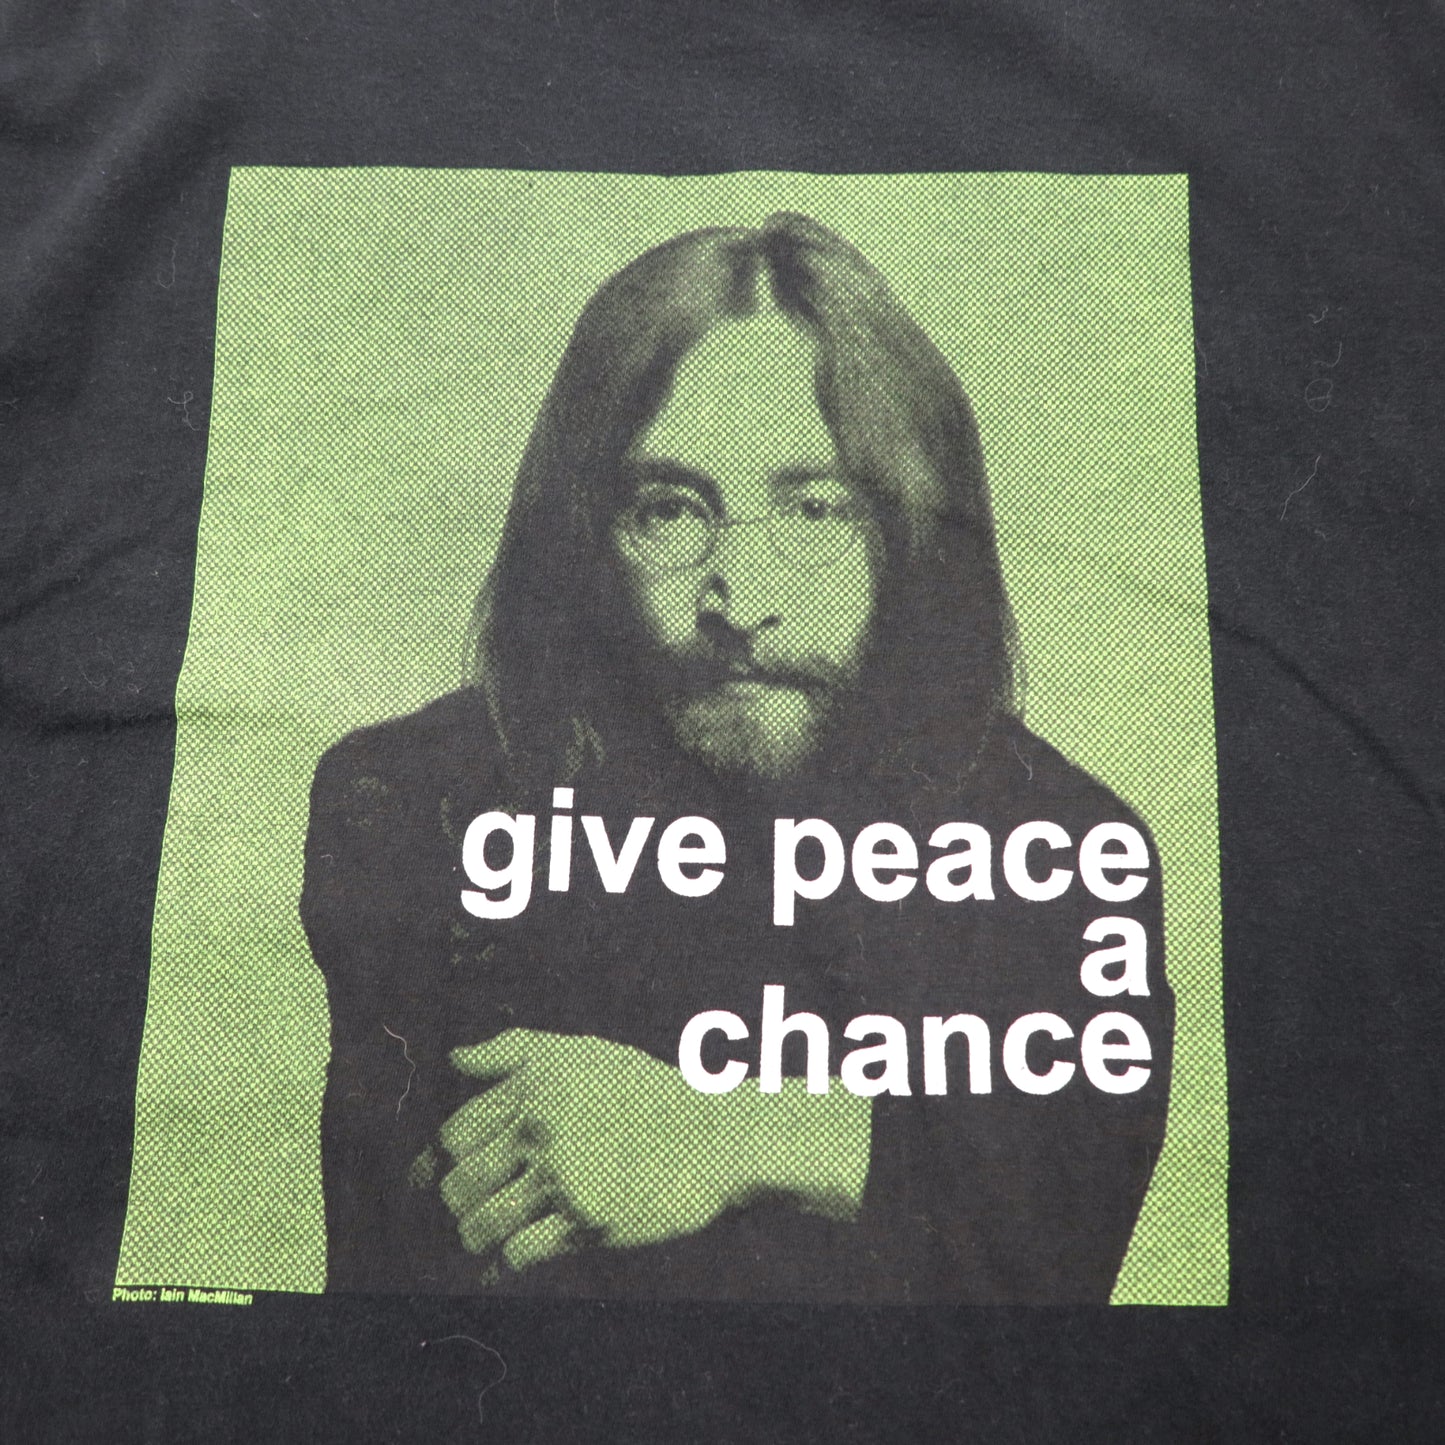 John Lennon ジョンレノン BEATLES フォトプリントTシャツ XL ブラック コットン give peace a chance ビッグサイズ メキシコ製